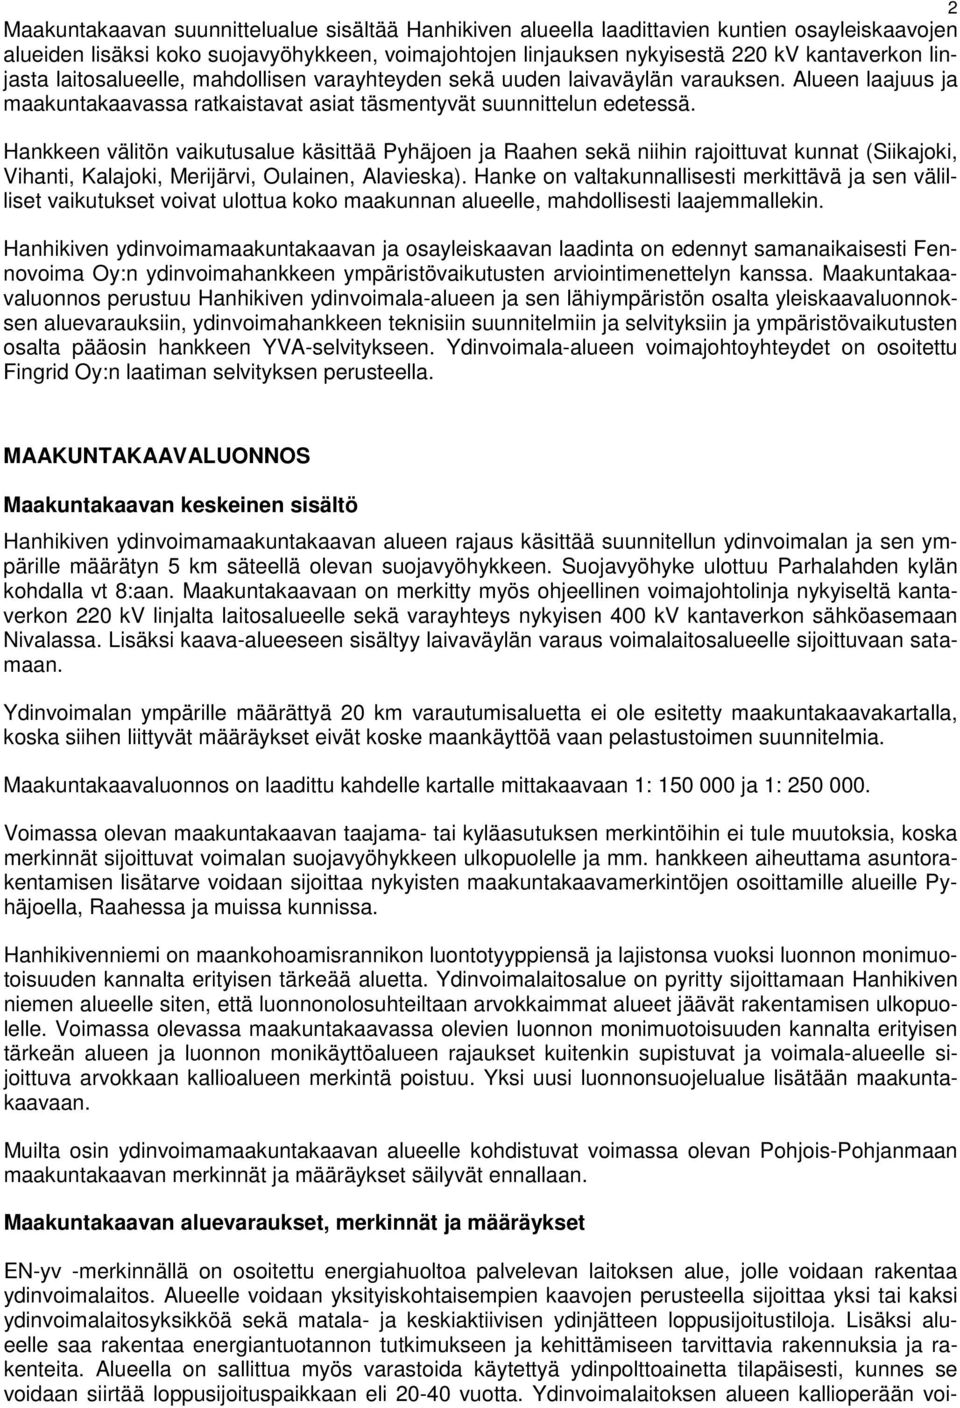 Hankkeen välitön vaikutusalue käsittää Pyhäjoen ja Raahen sekä niihin rajoittuvat kunnat (Siikajoki, Vihanti, Kalajoki, Merijärvi, Oulainen, Alavieska).